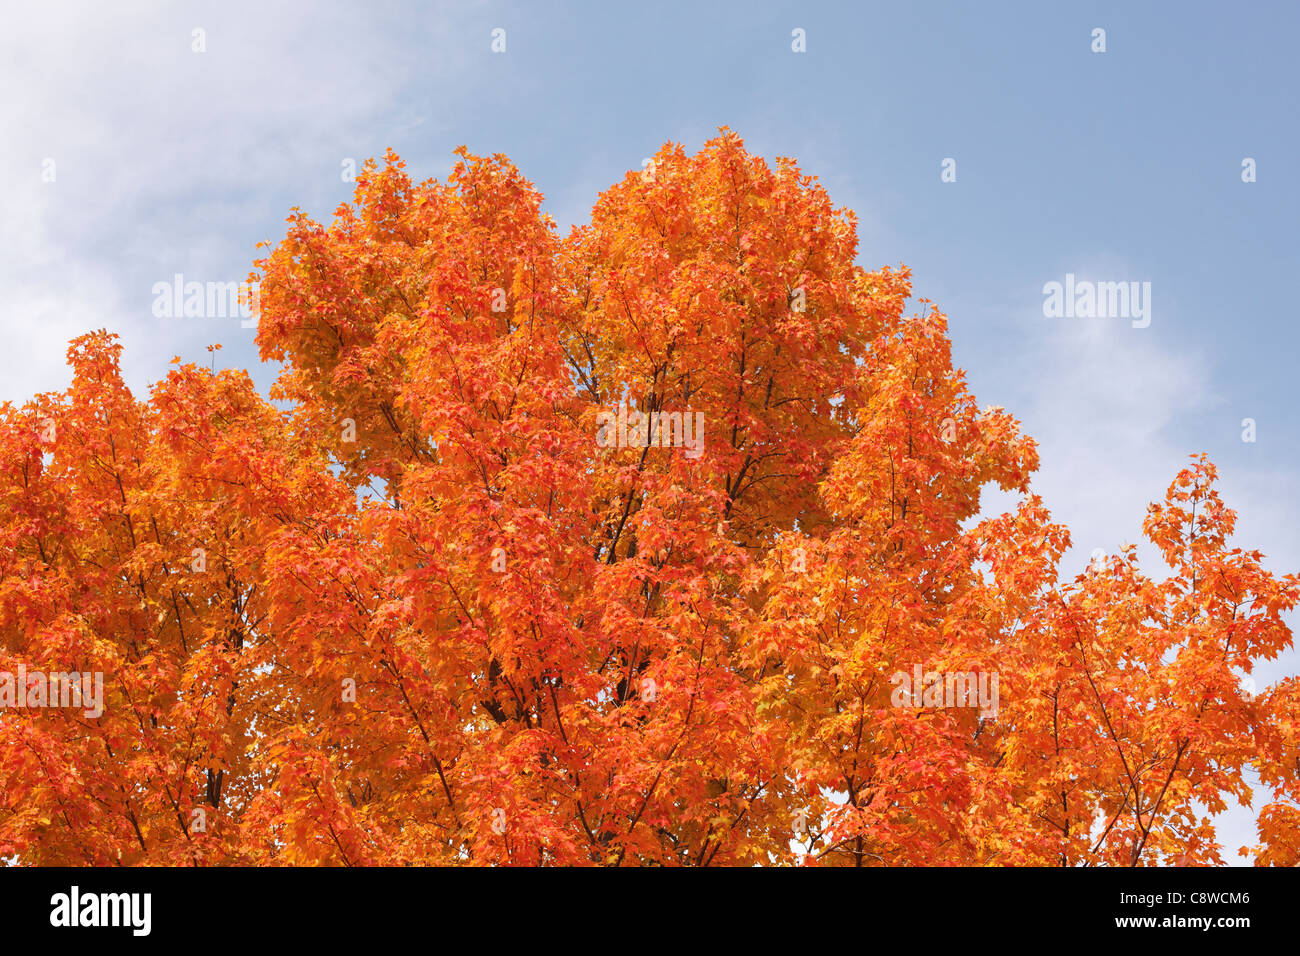 Las hojas del árbol de arce se vuelve anaranjado en el otoño. Foto de stock